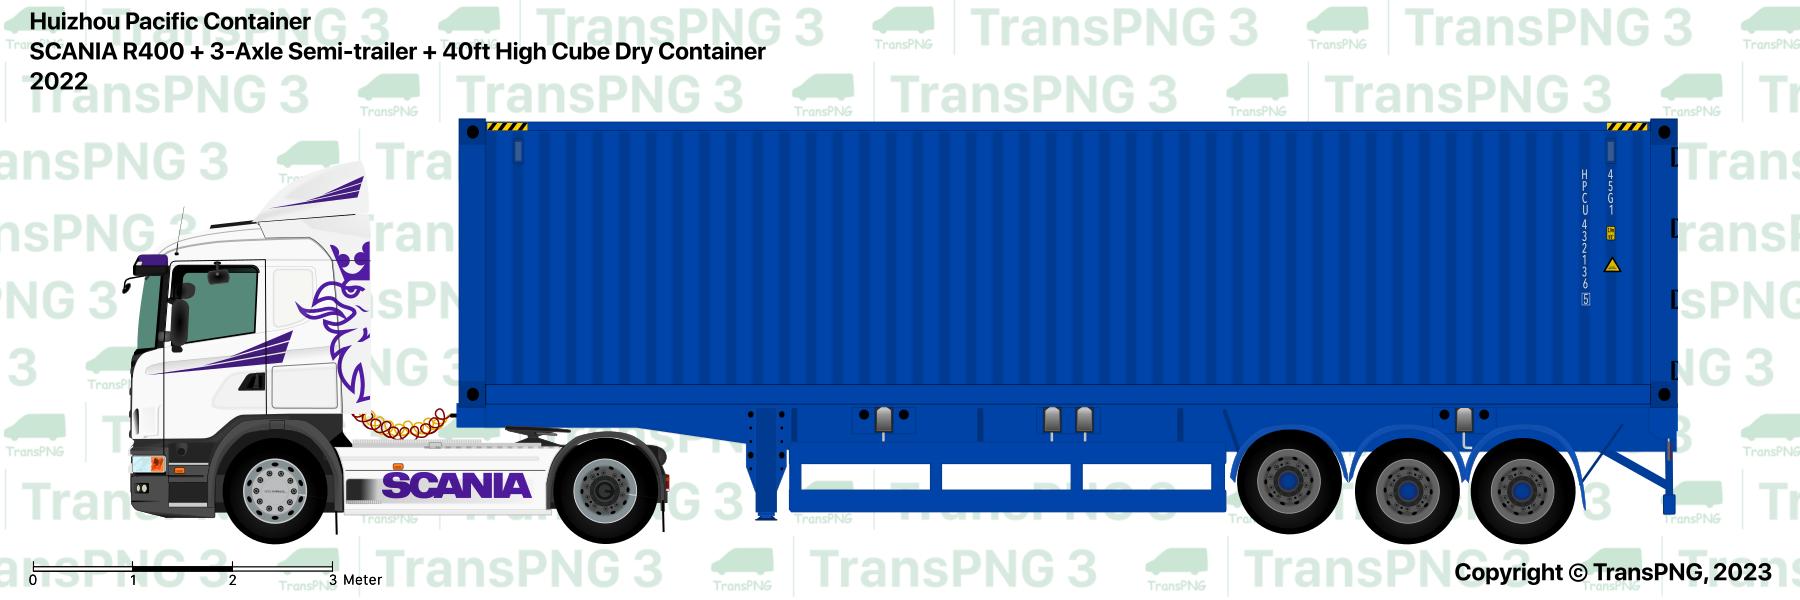 TransPNG.net | 分享世界各地多種交通工具的優秀繪圖 - 貨車 53324480484_0d44bf8c23_o